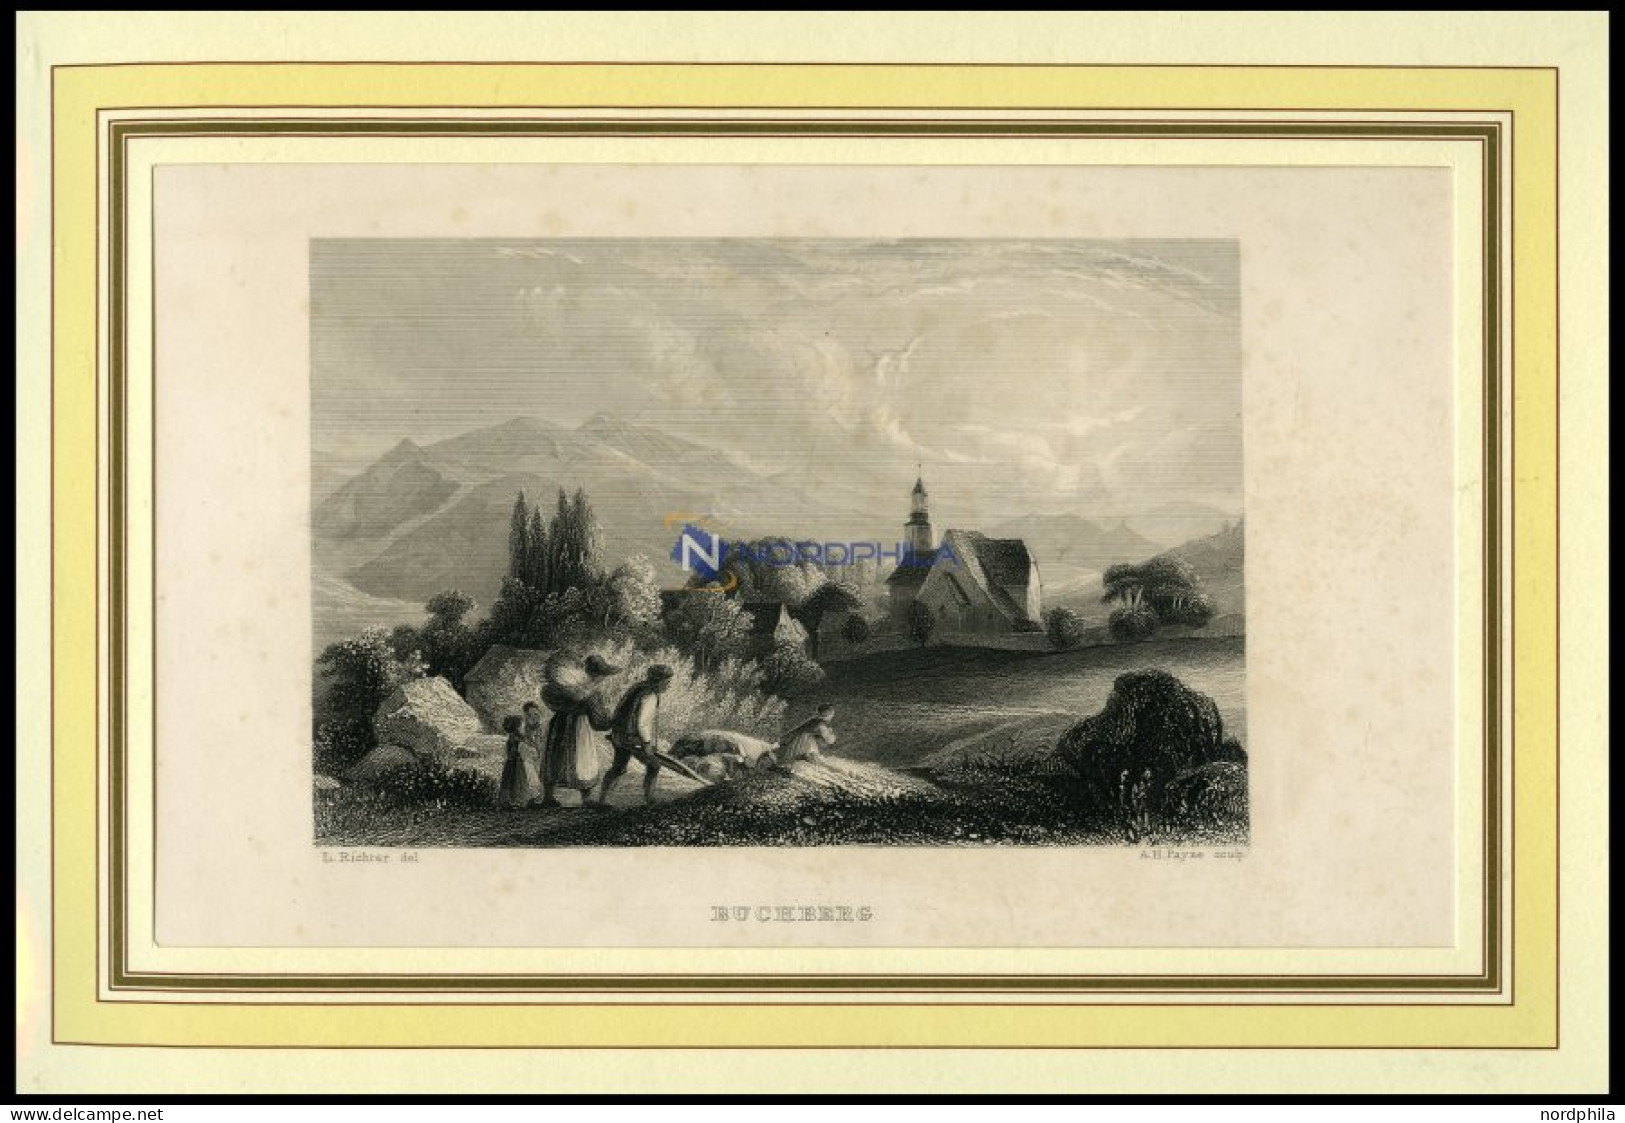 BUCHBERG, Gesamtansicht, Stahlstich Von Richter/Payne Um 1840 - Lithographien